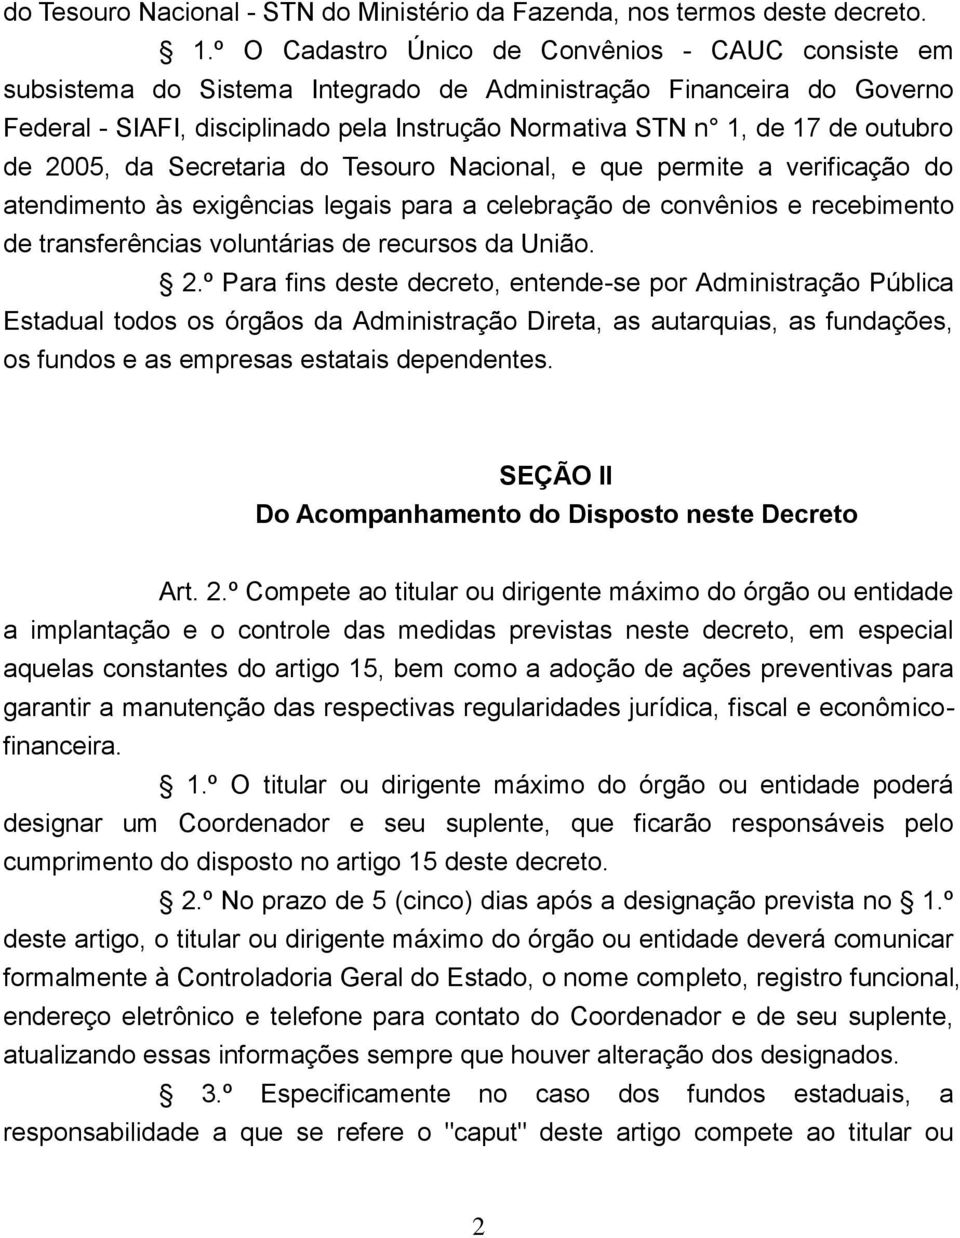 outubro de 2005, da Secretaria do Tesouro Nacional, e que permite a verificação do atendimento às exigências legais para a celebração de convênios e recebimento de transferências voluntárias de